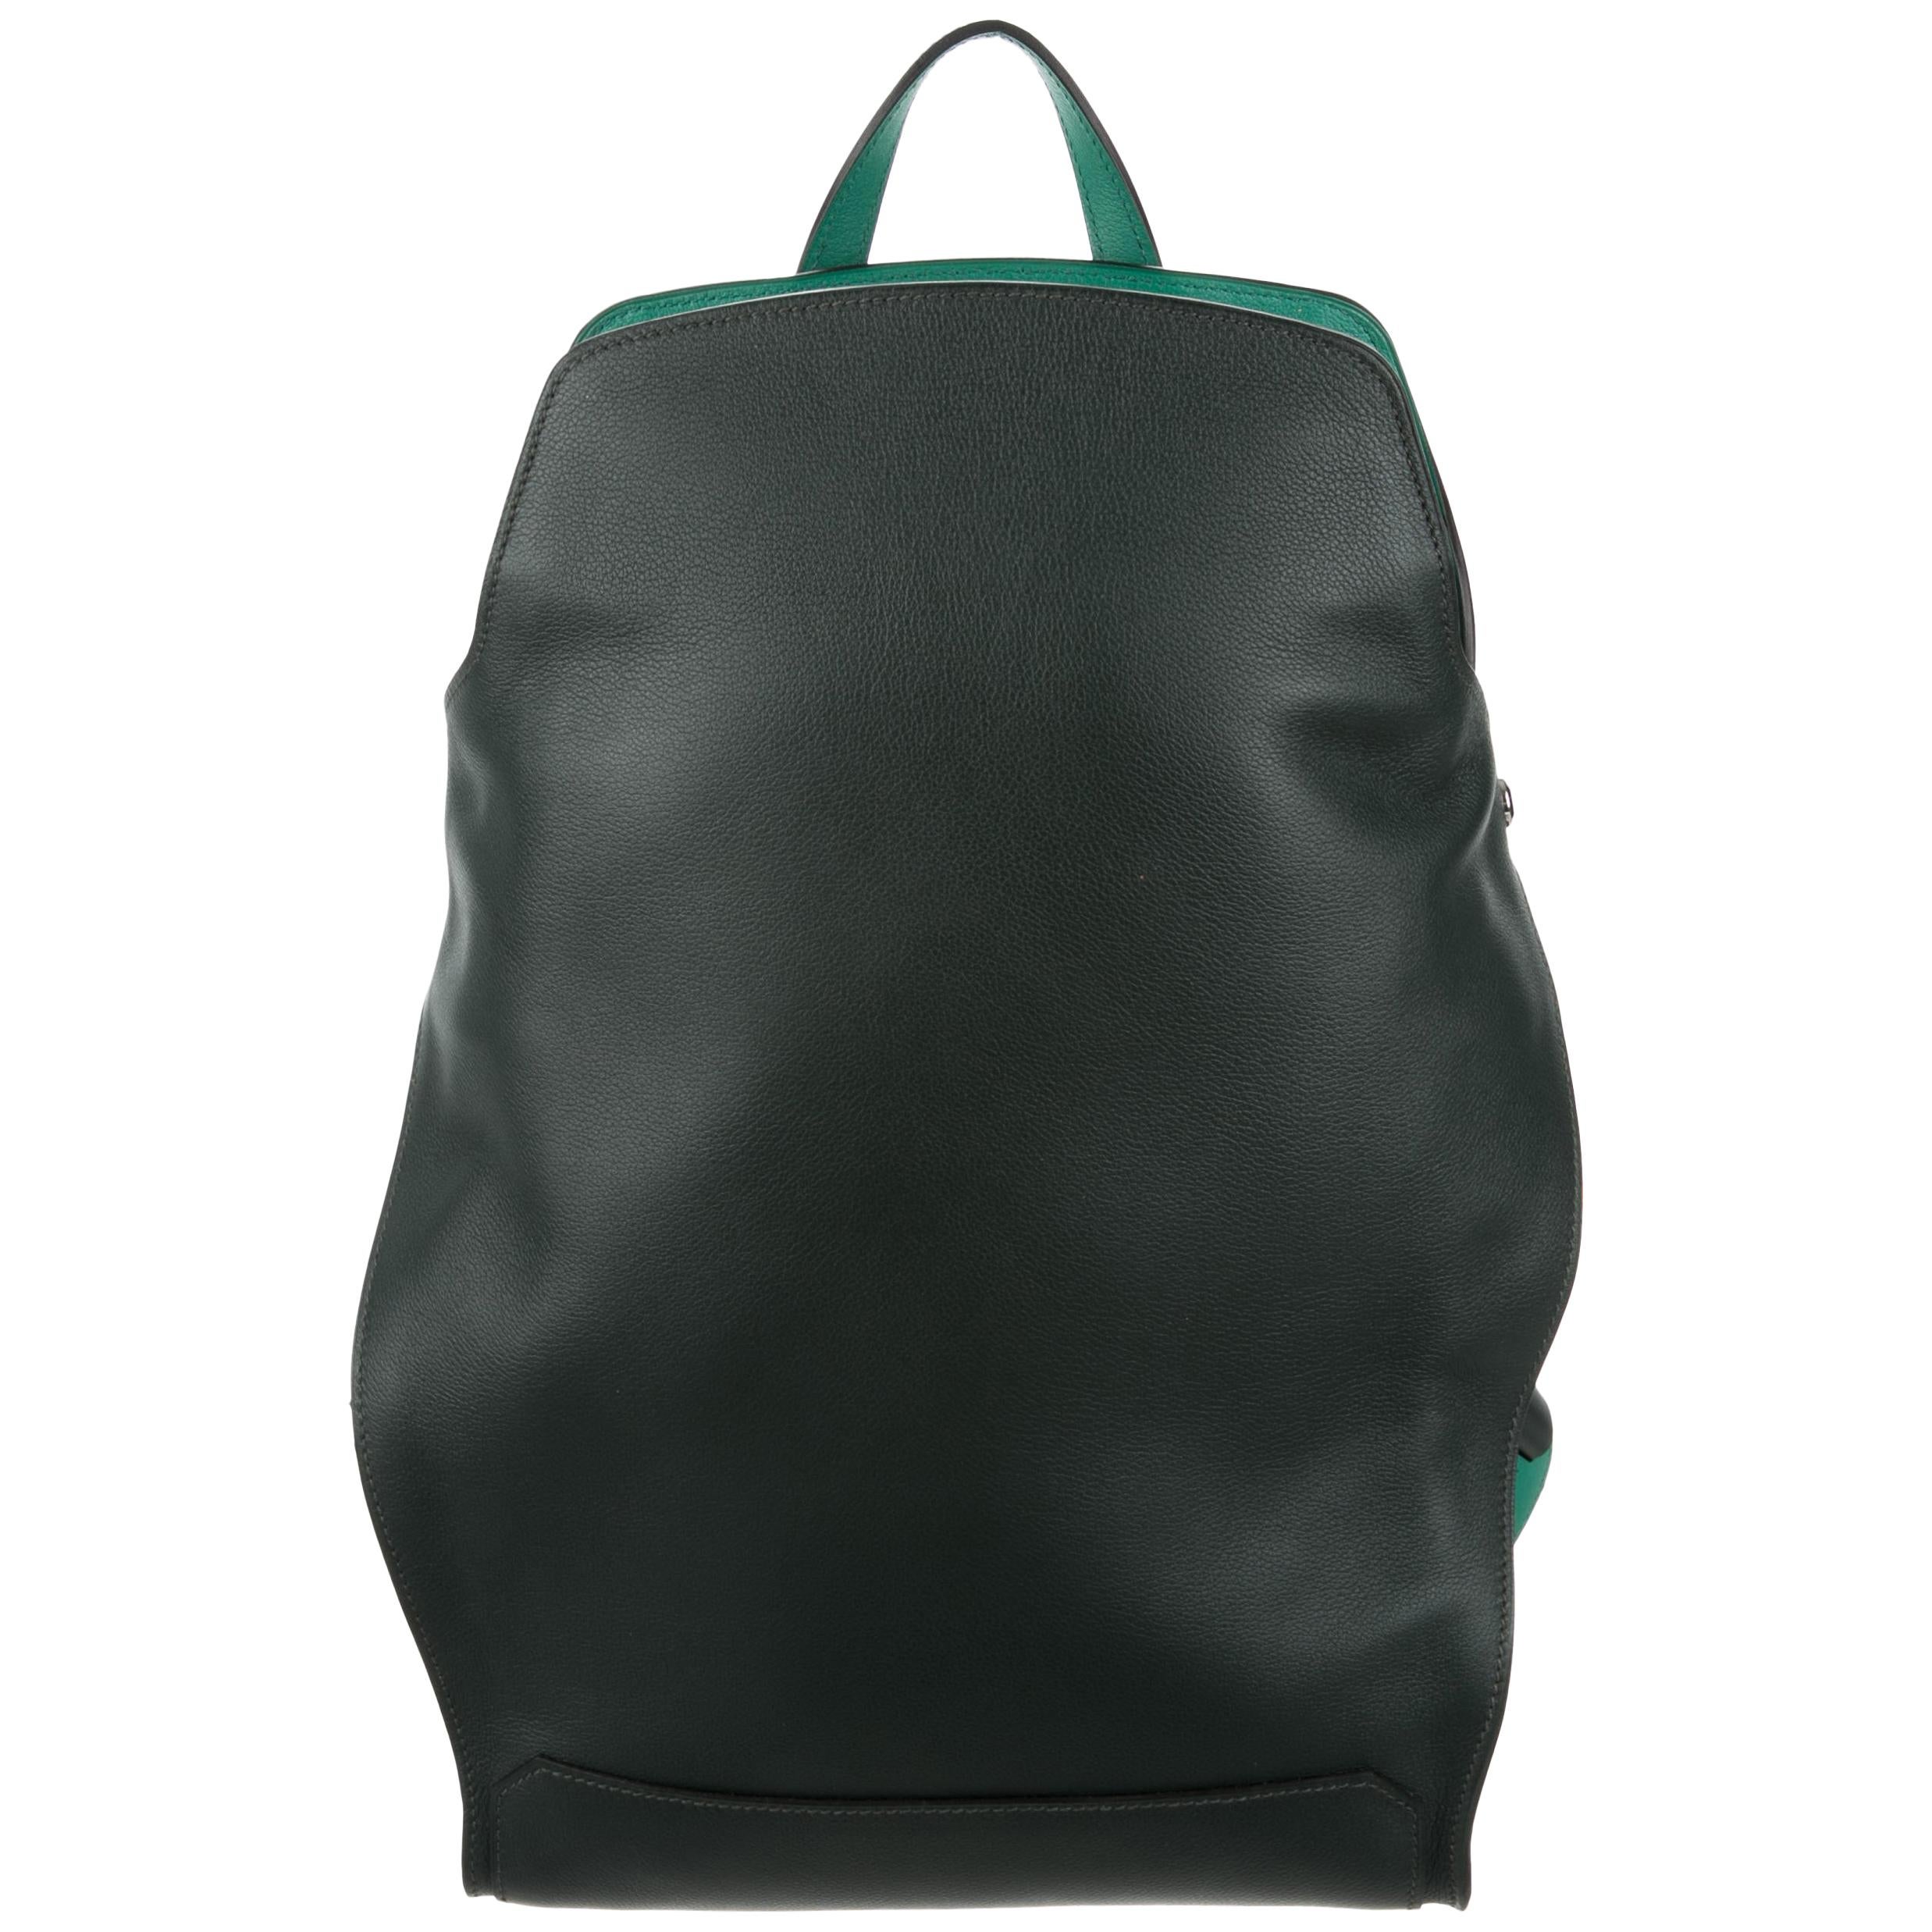 Hermes Black Green Leather Backpack Travel Shoulder Bag 